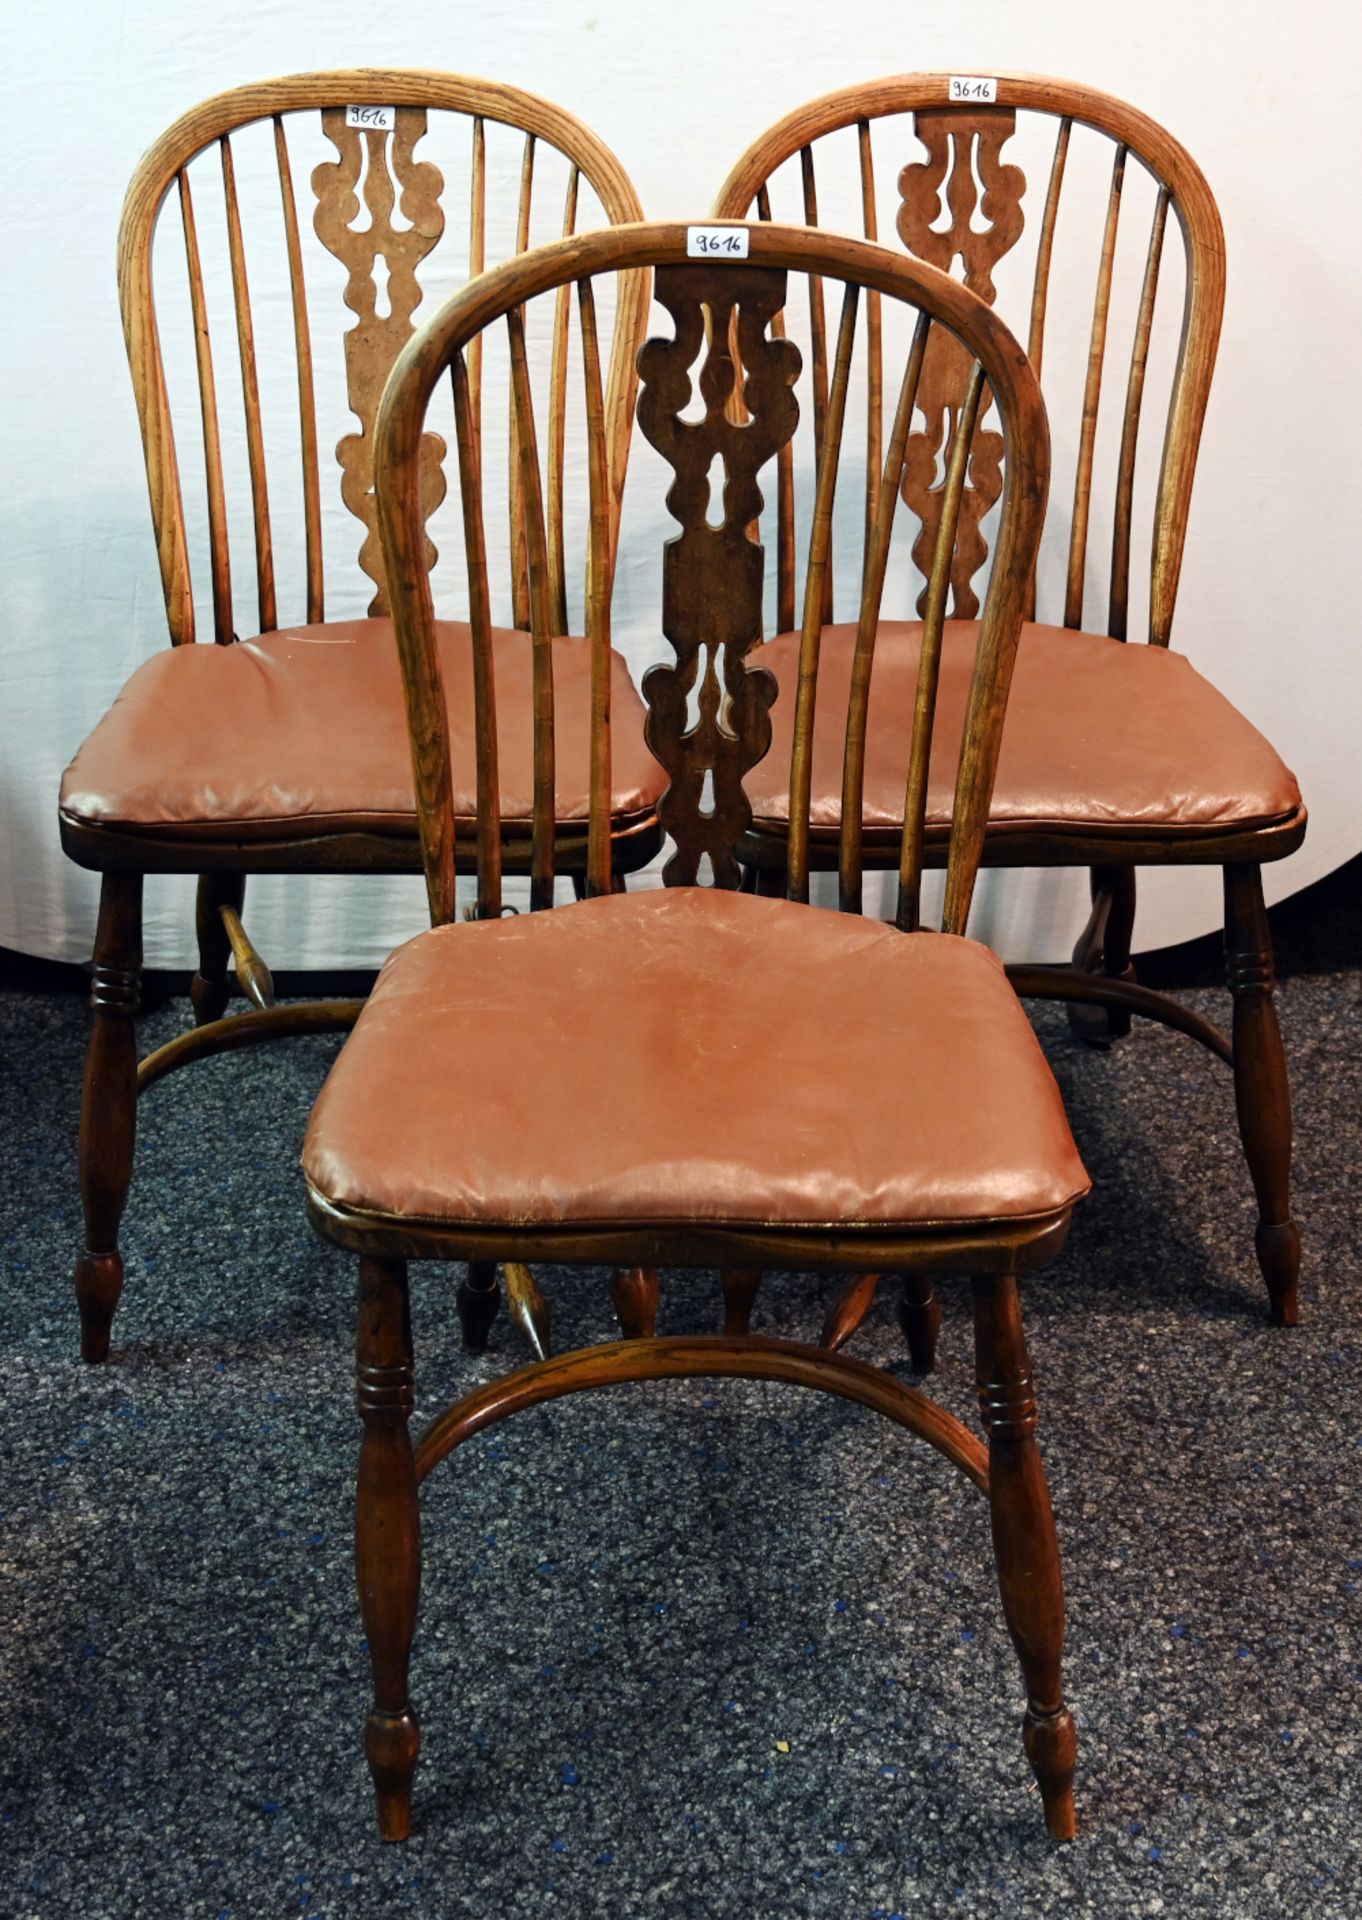 5 Stühle/1 Sitzbank im Windsor-Stil, davon 2 Armlehnstühle H. PANDER & ZONEN, Dänemark Modellnr. P 5 - Image 2 of 3